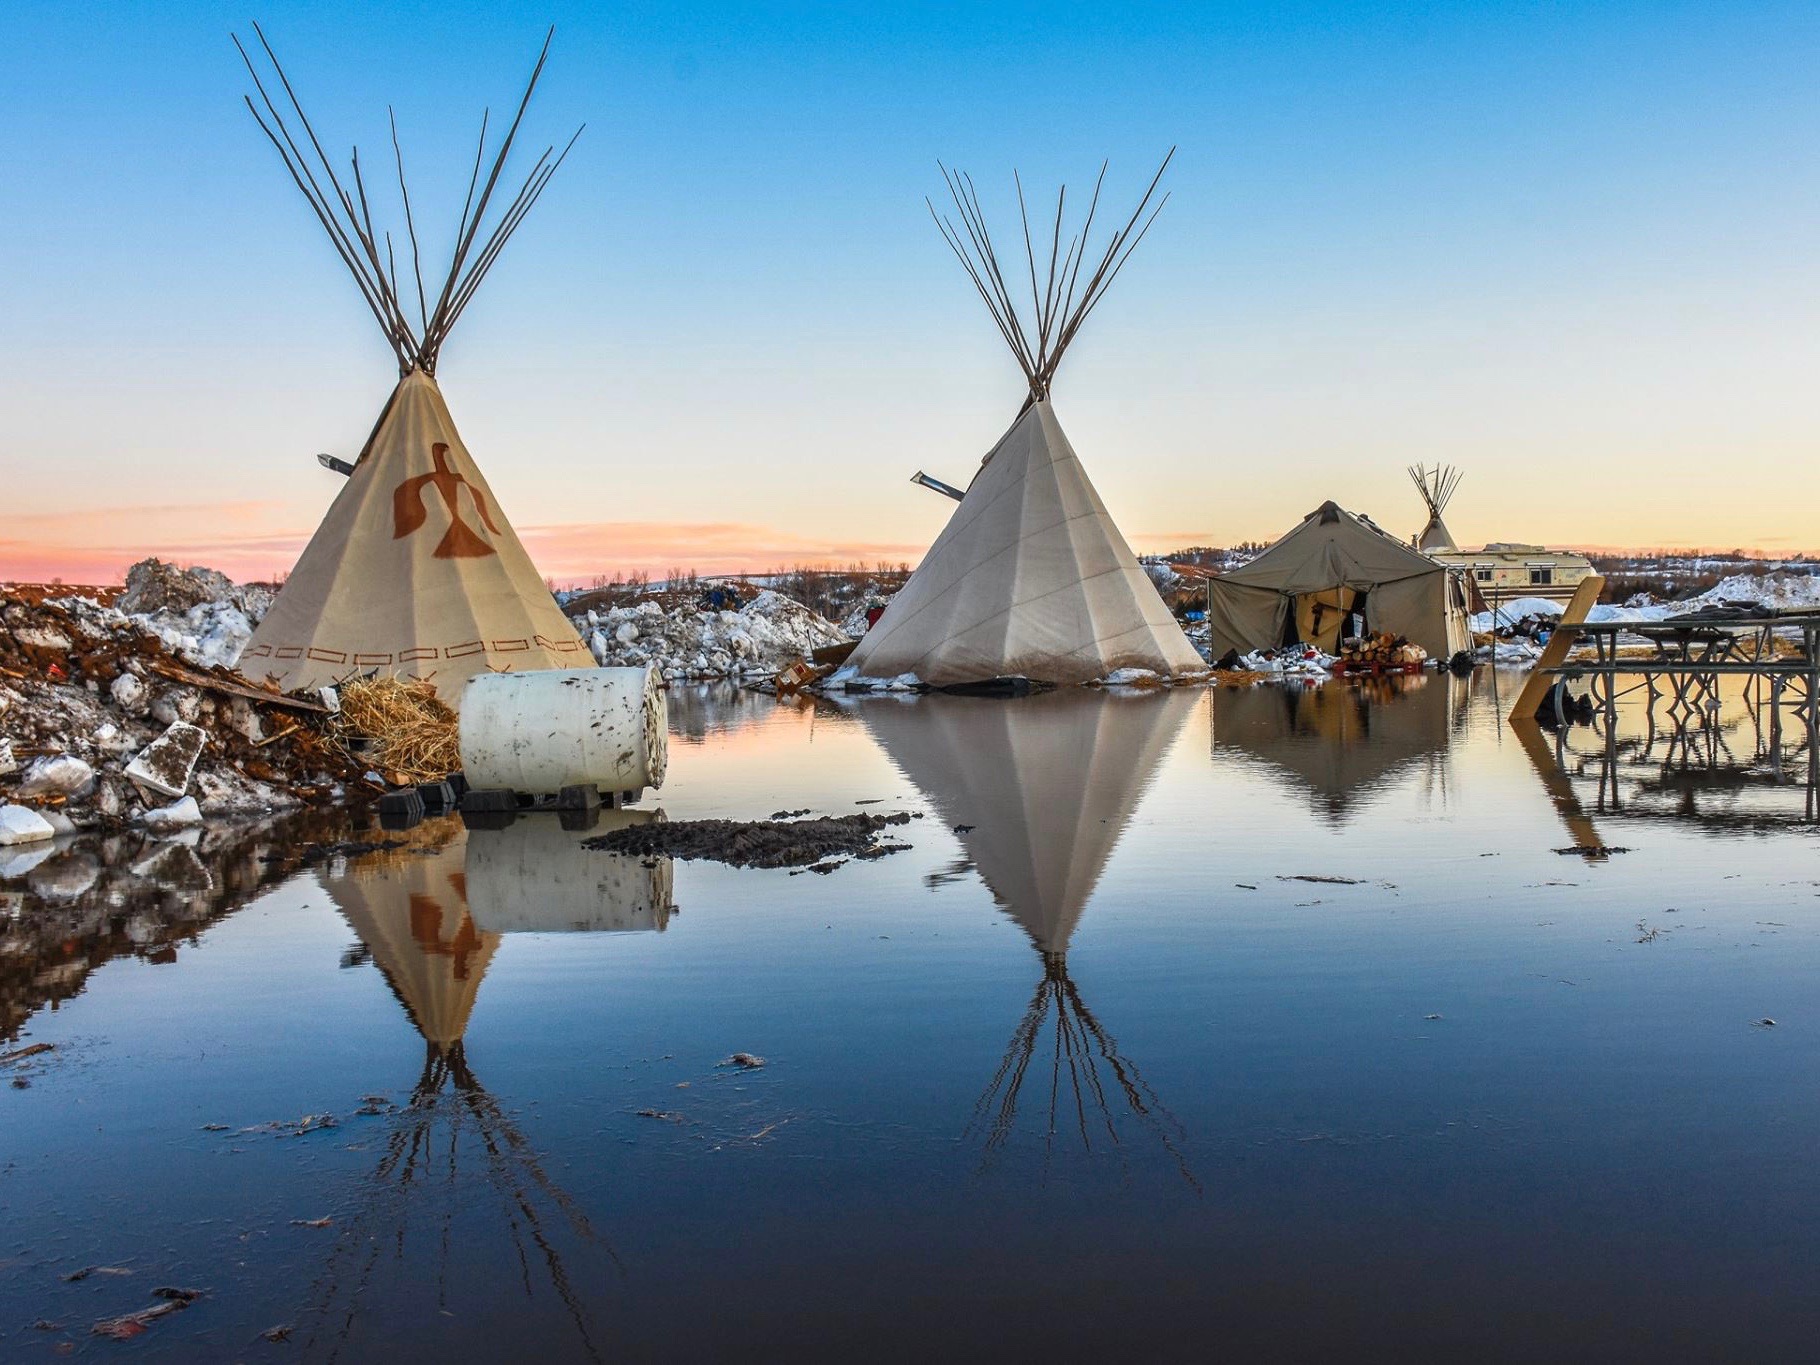 James Giago Davies: Tribes face bigger threat than Dakota Access